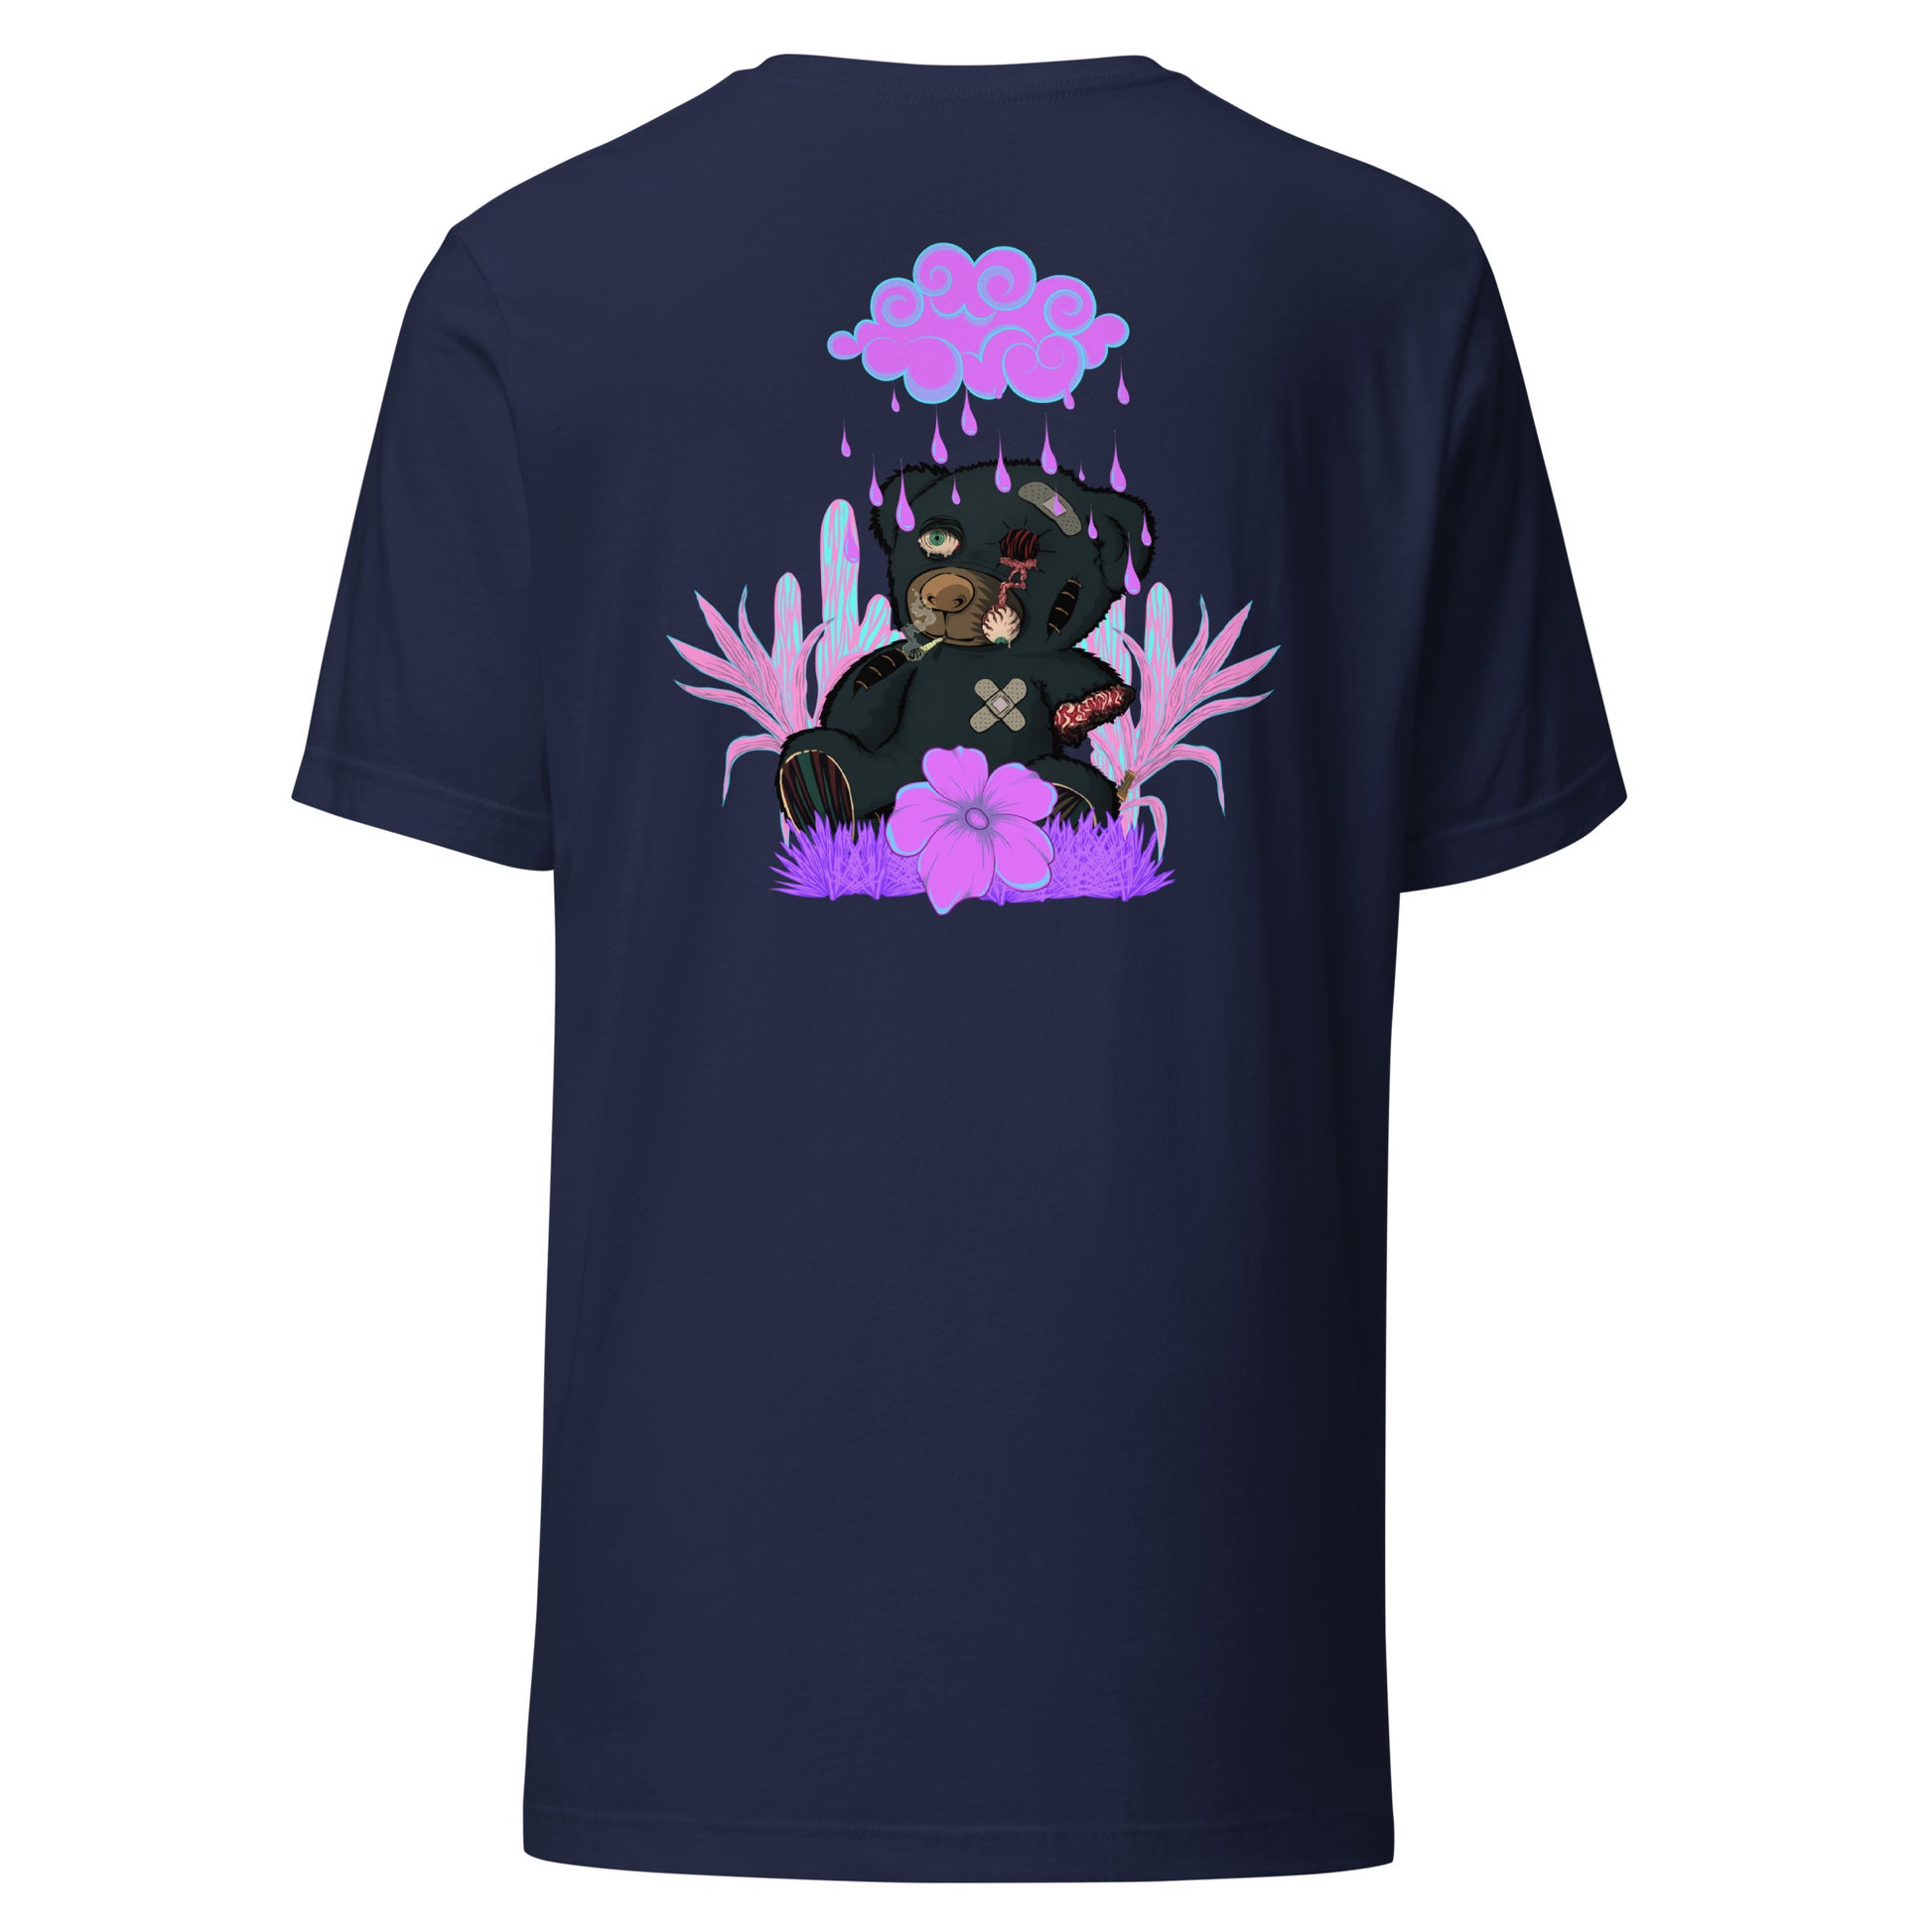 T-Shirt trasher not for kids effet néon weed et motif floral t-shirt de face unisex couleur navy